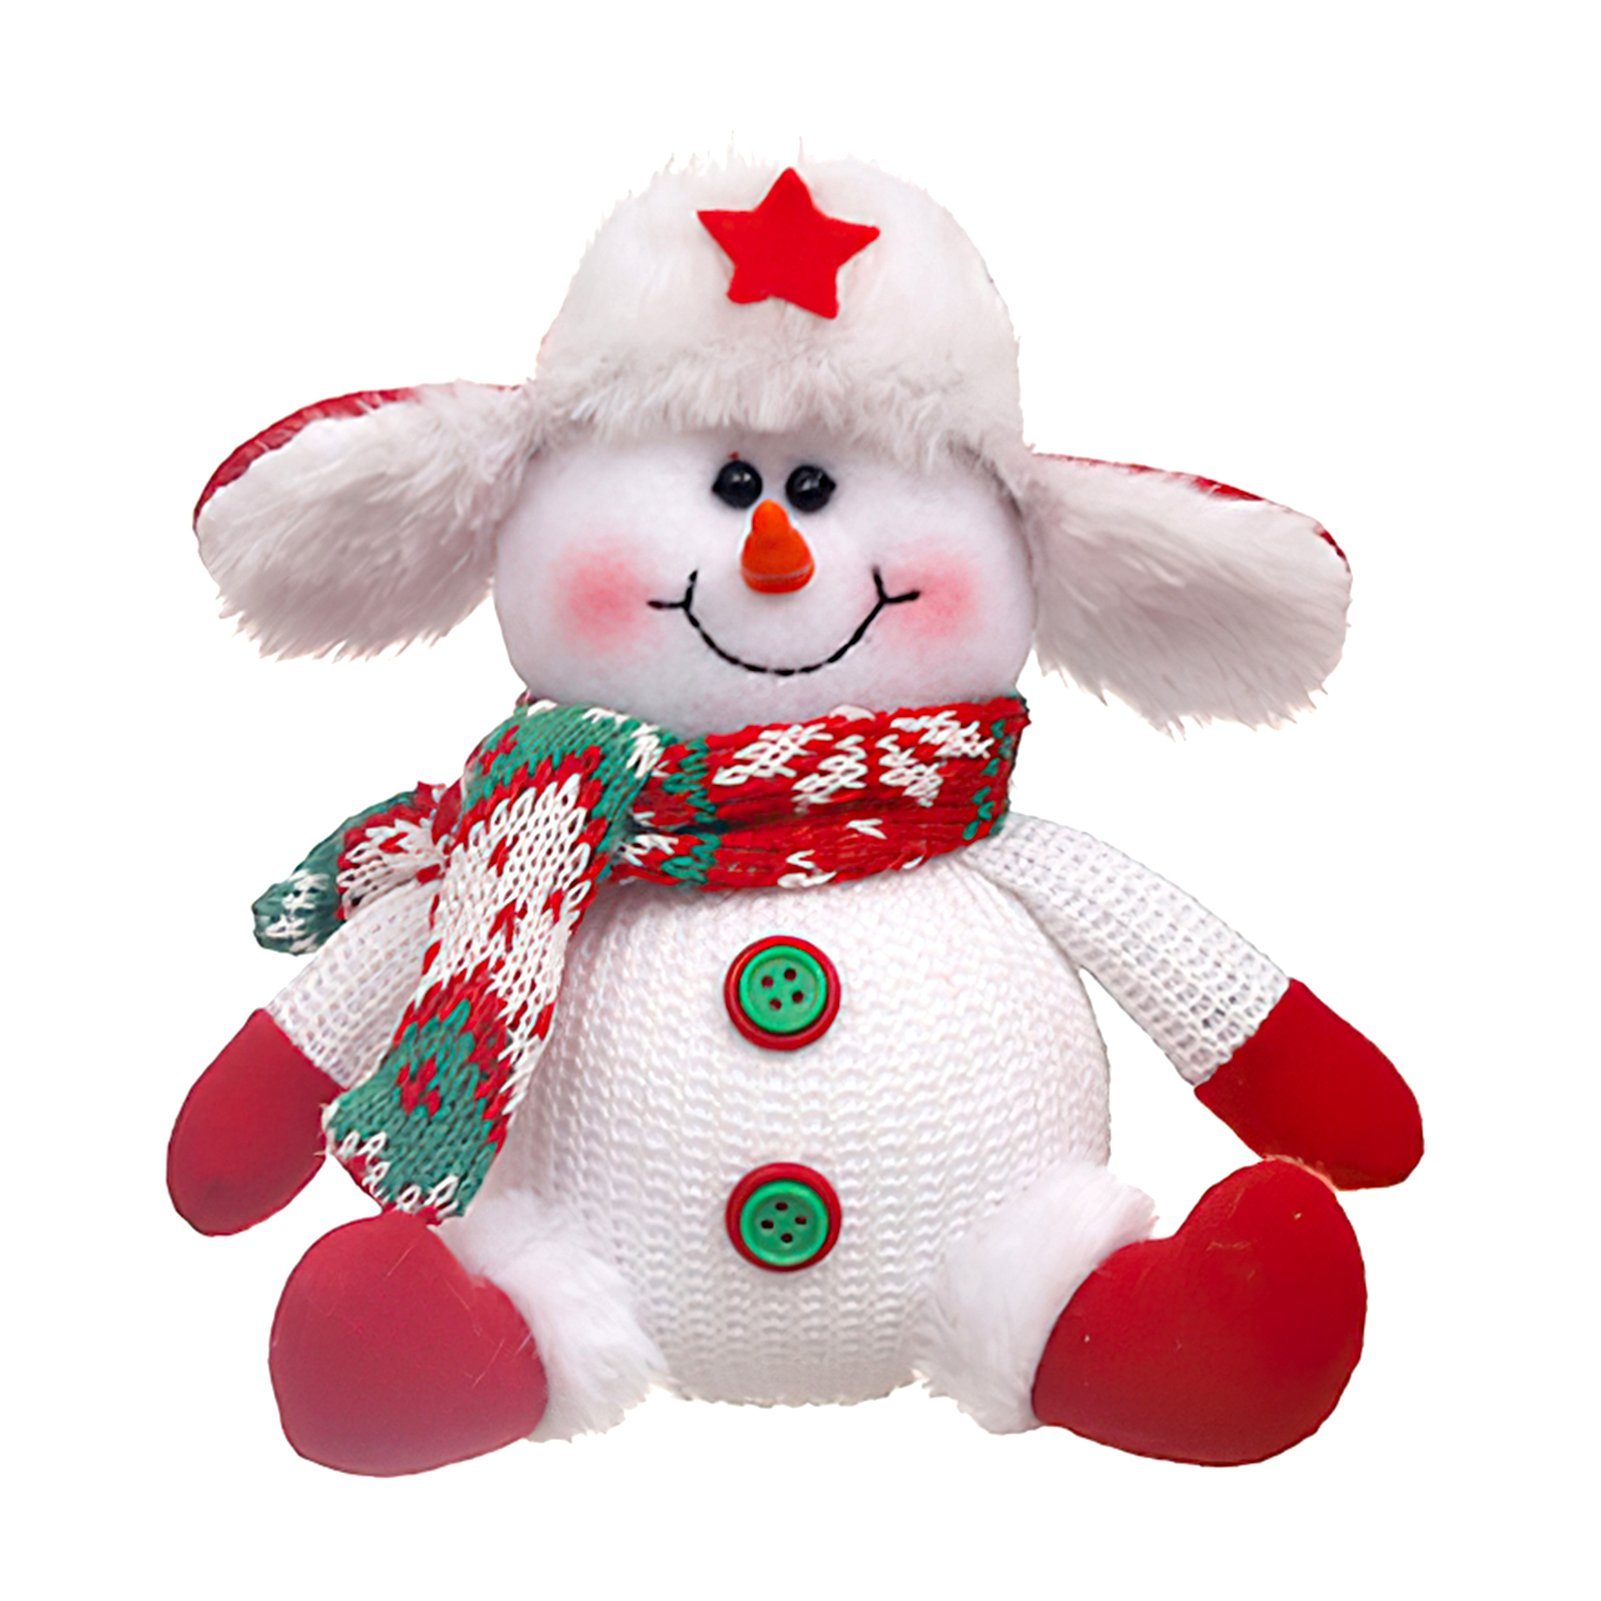 Blusmart Hänge-Weihnachtsbaum Elche/Schneemann/alte Männer Weihnachtsbaum Ornament snowman